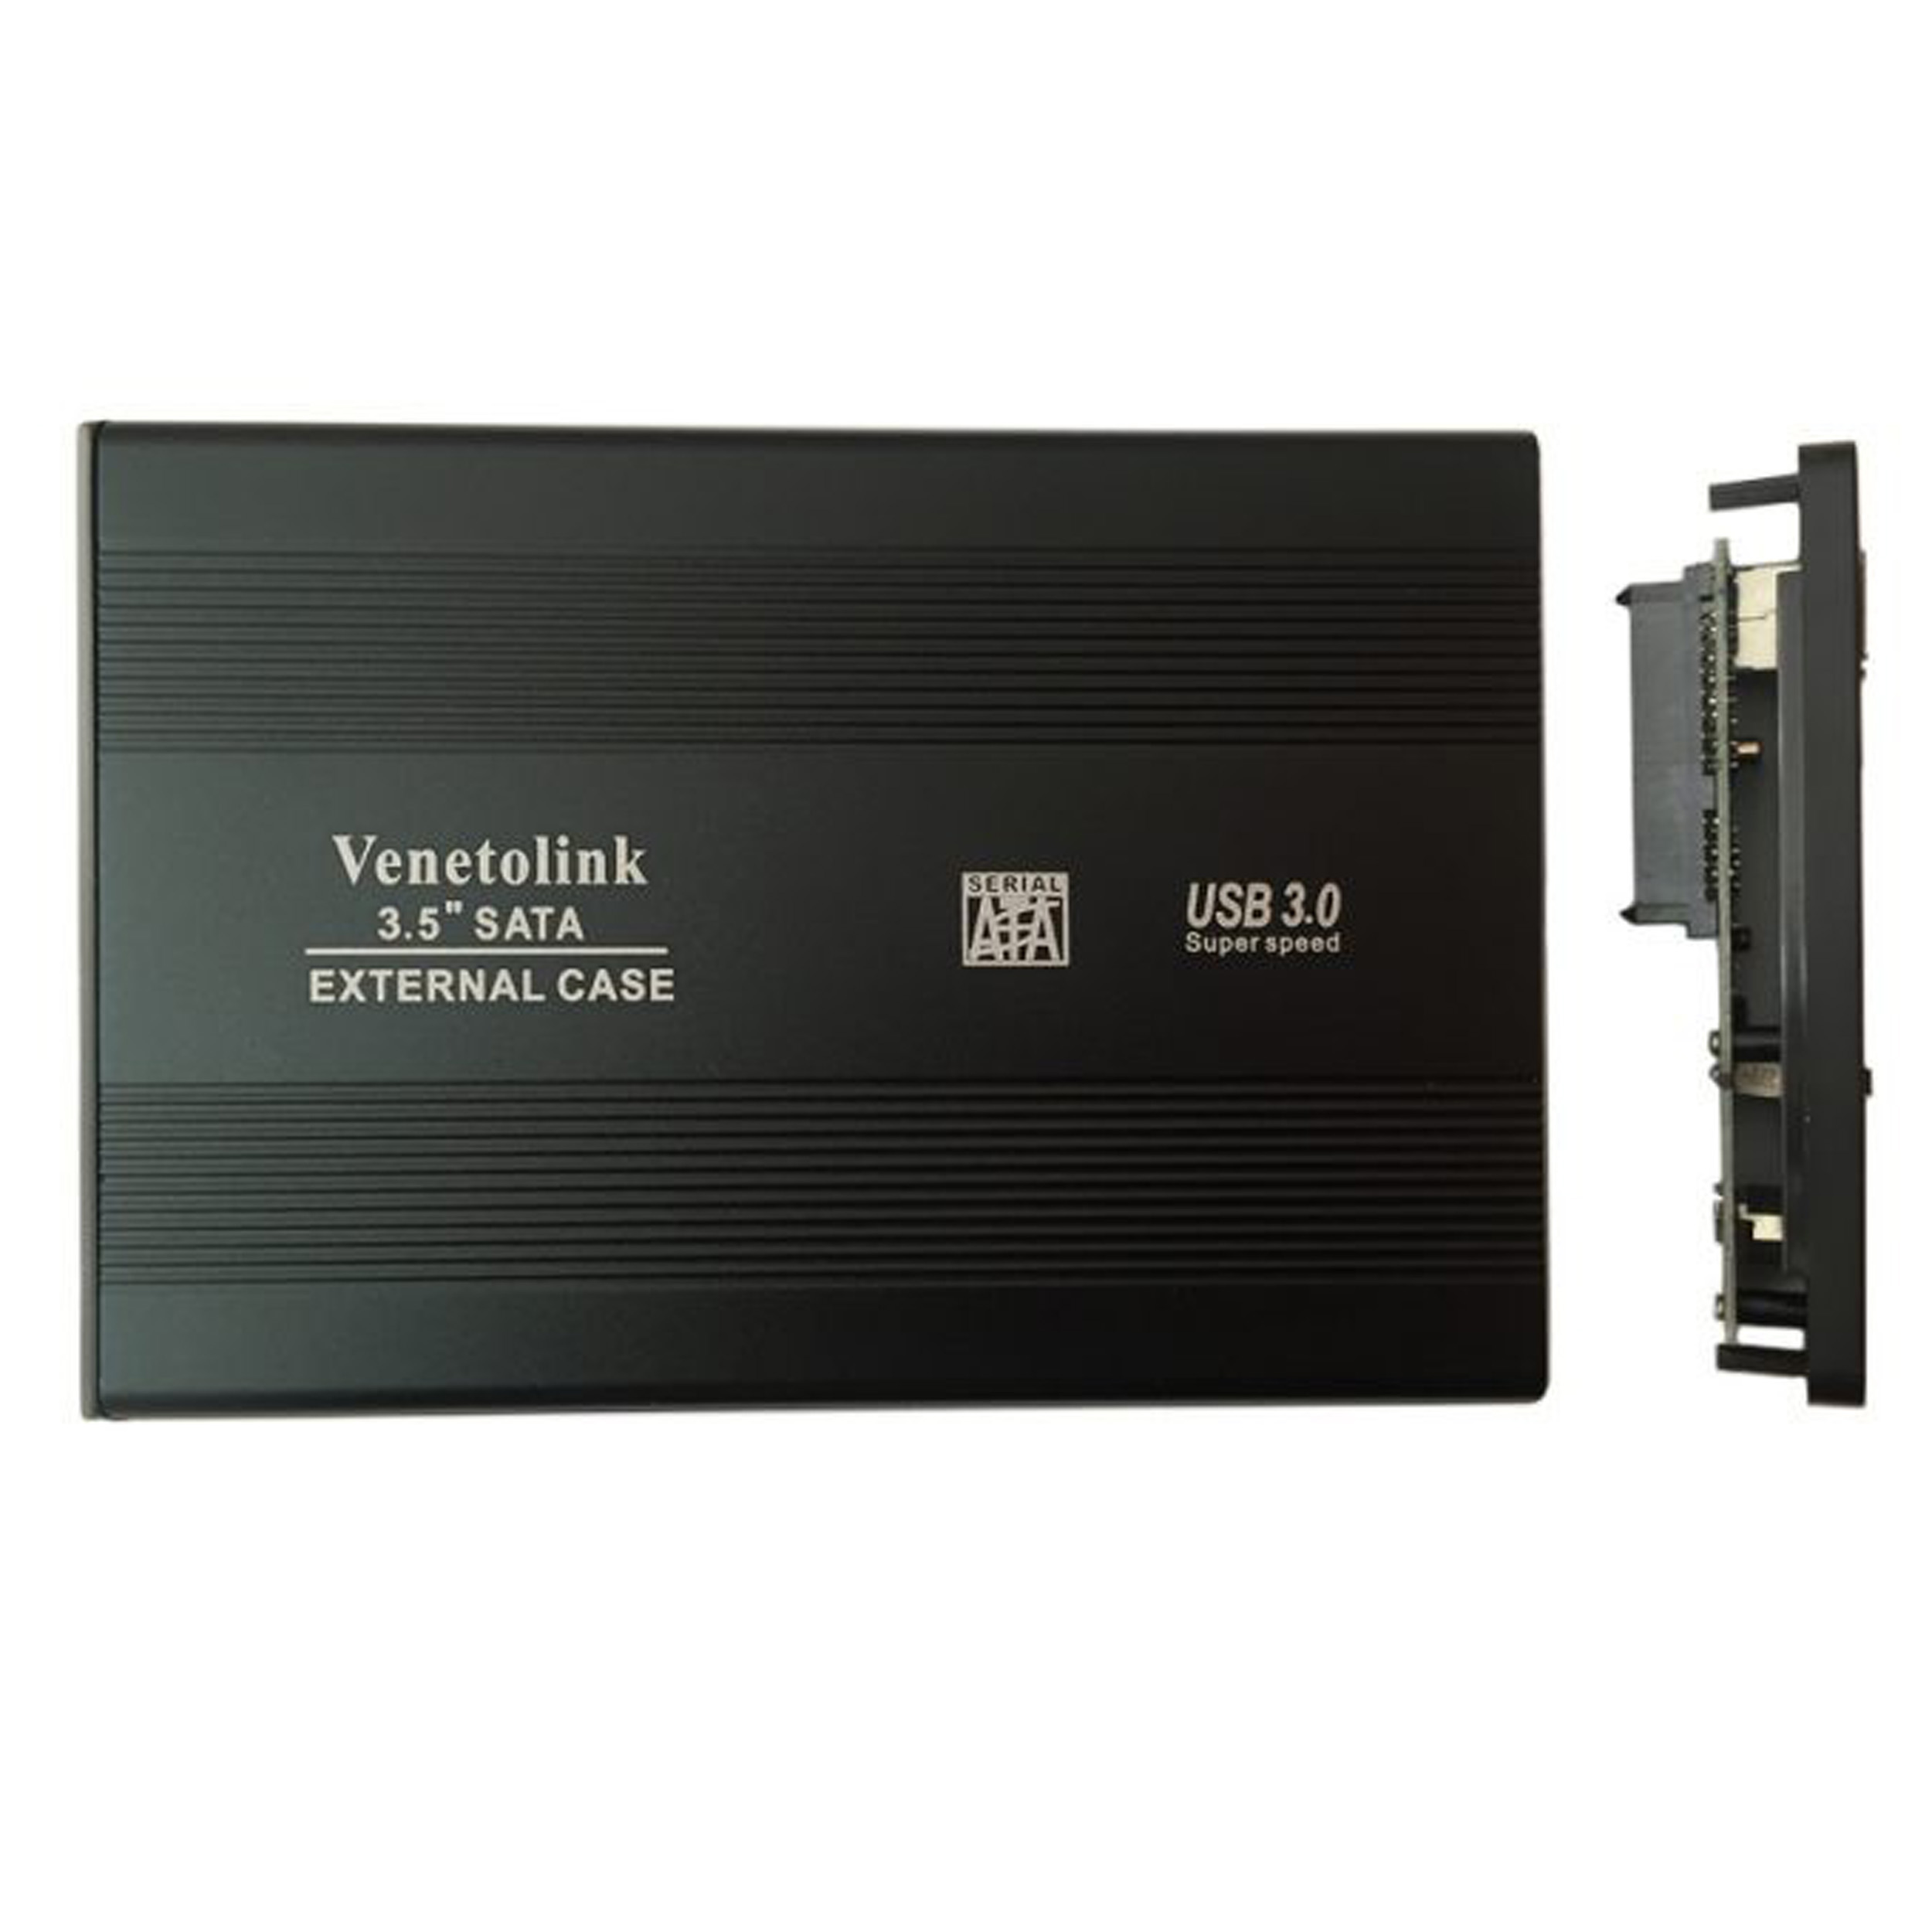 باکس تبدیل SATA به USB 2.0 هارددیسک 3.5 اینچی ونتولینک مدل 02